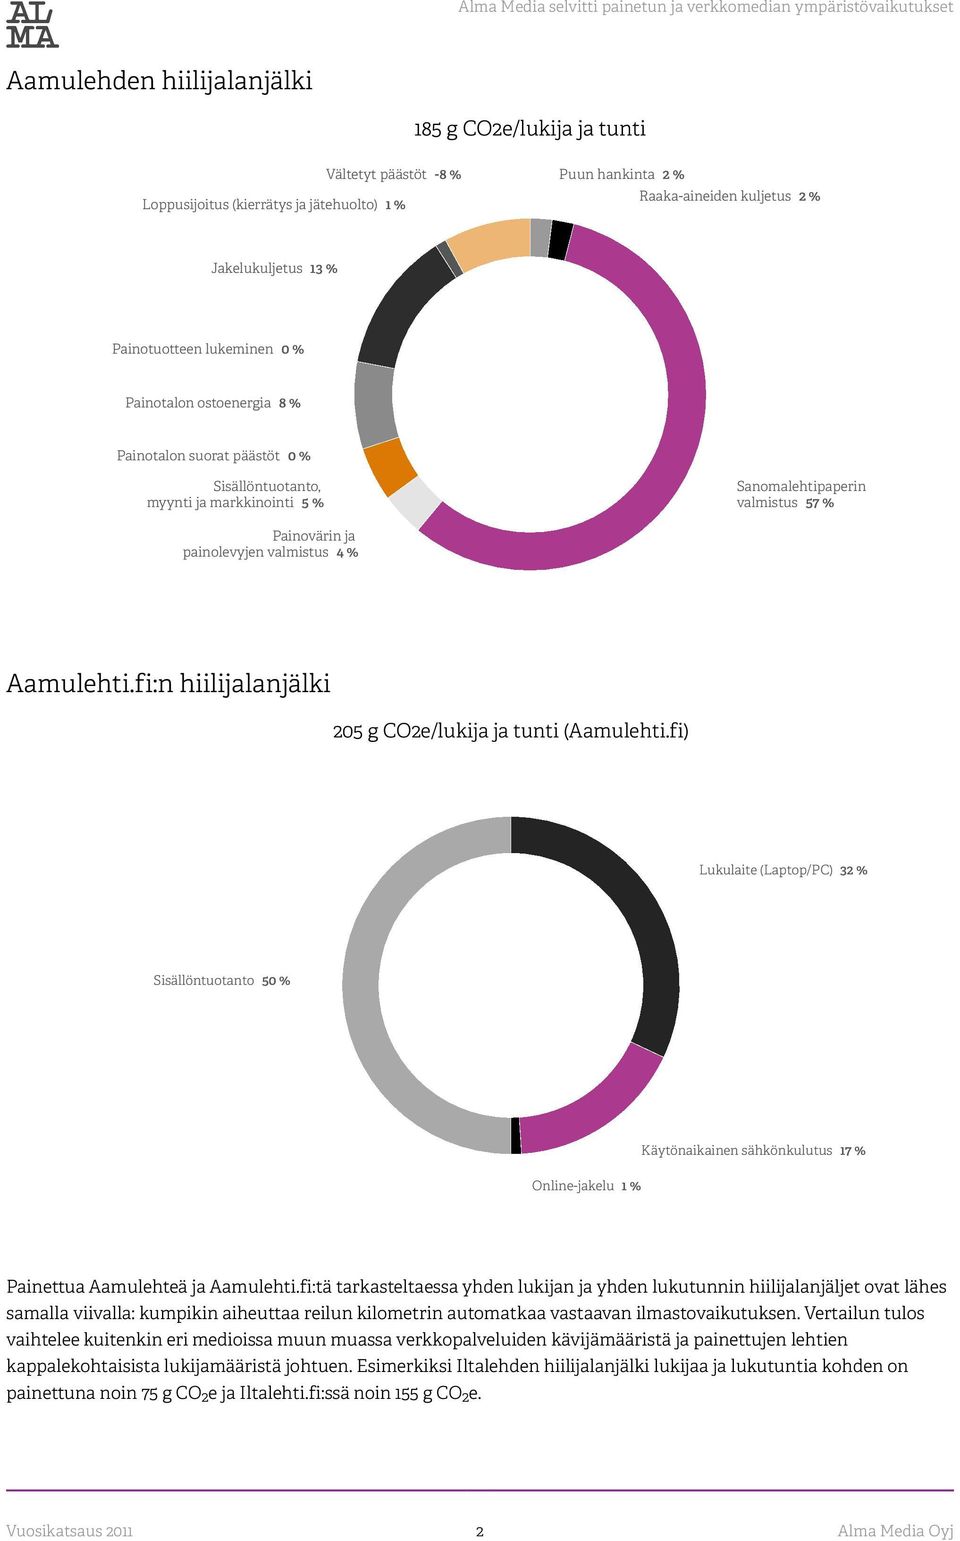 Sanomalehtipaperin valmistus 57 % Painovärin ja painolevyjen valmistus 4 % Aamulehti.fi:n hiilijalanjälki 205 g CO2e/lukija ja tunti (Aamulehti.